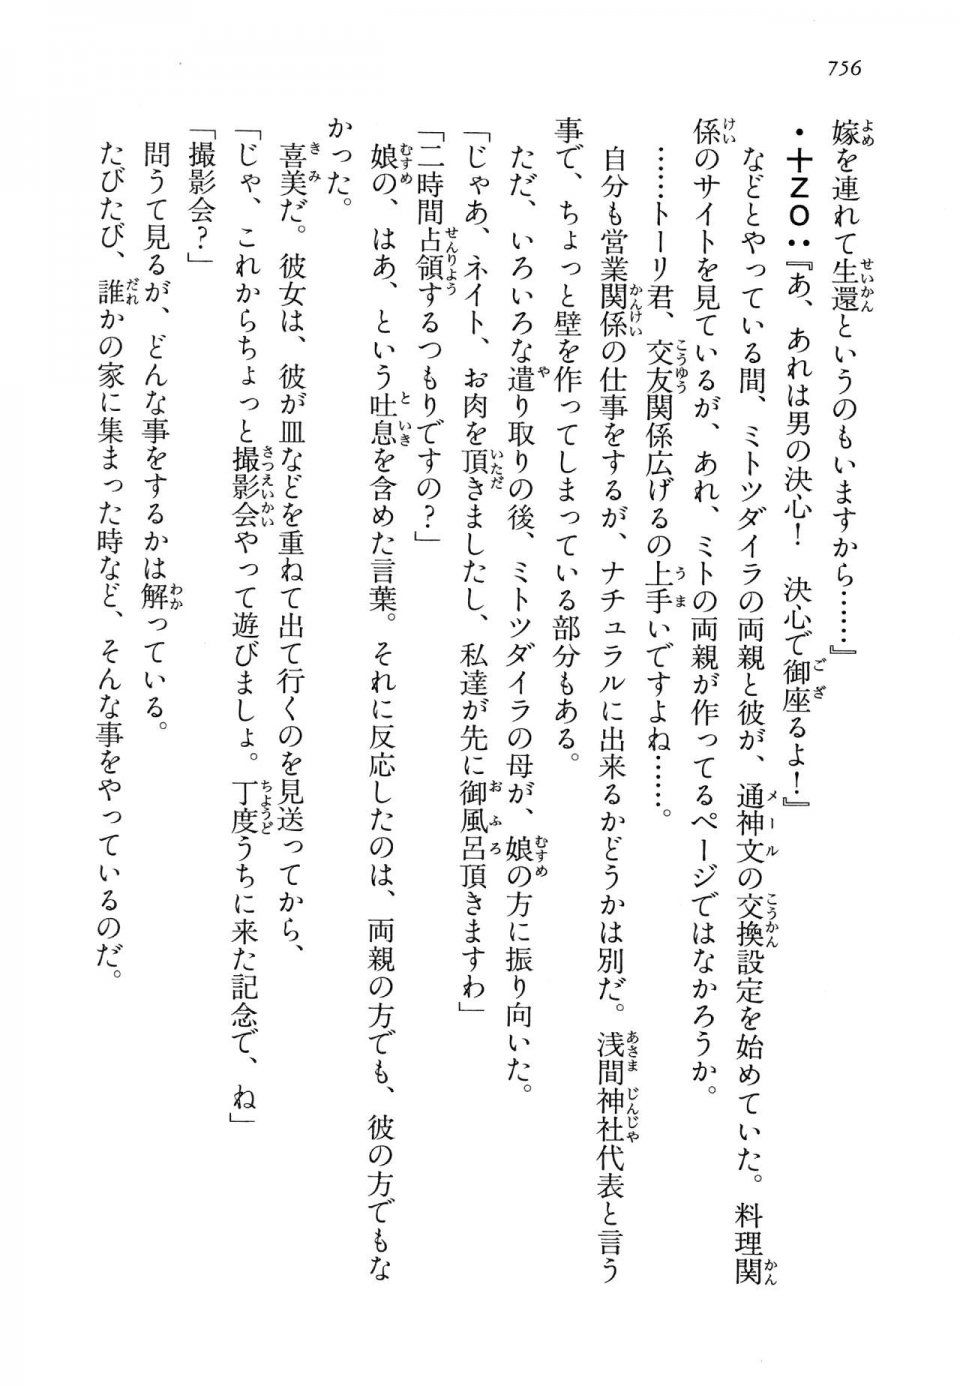 Kyoukai Senjou no Horizon LN Vol 14(6B) - Photo #756